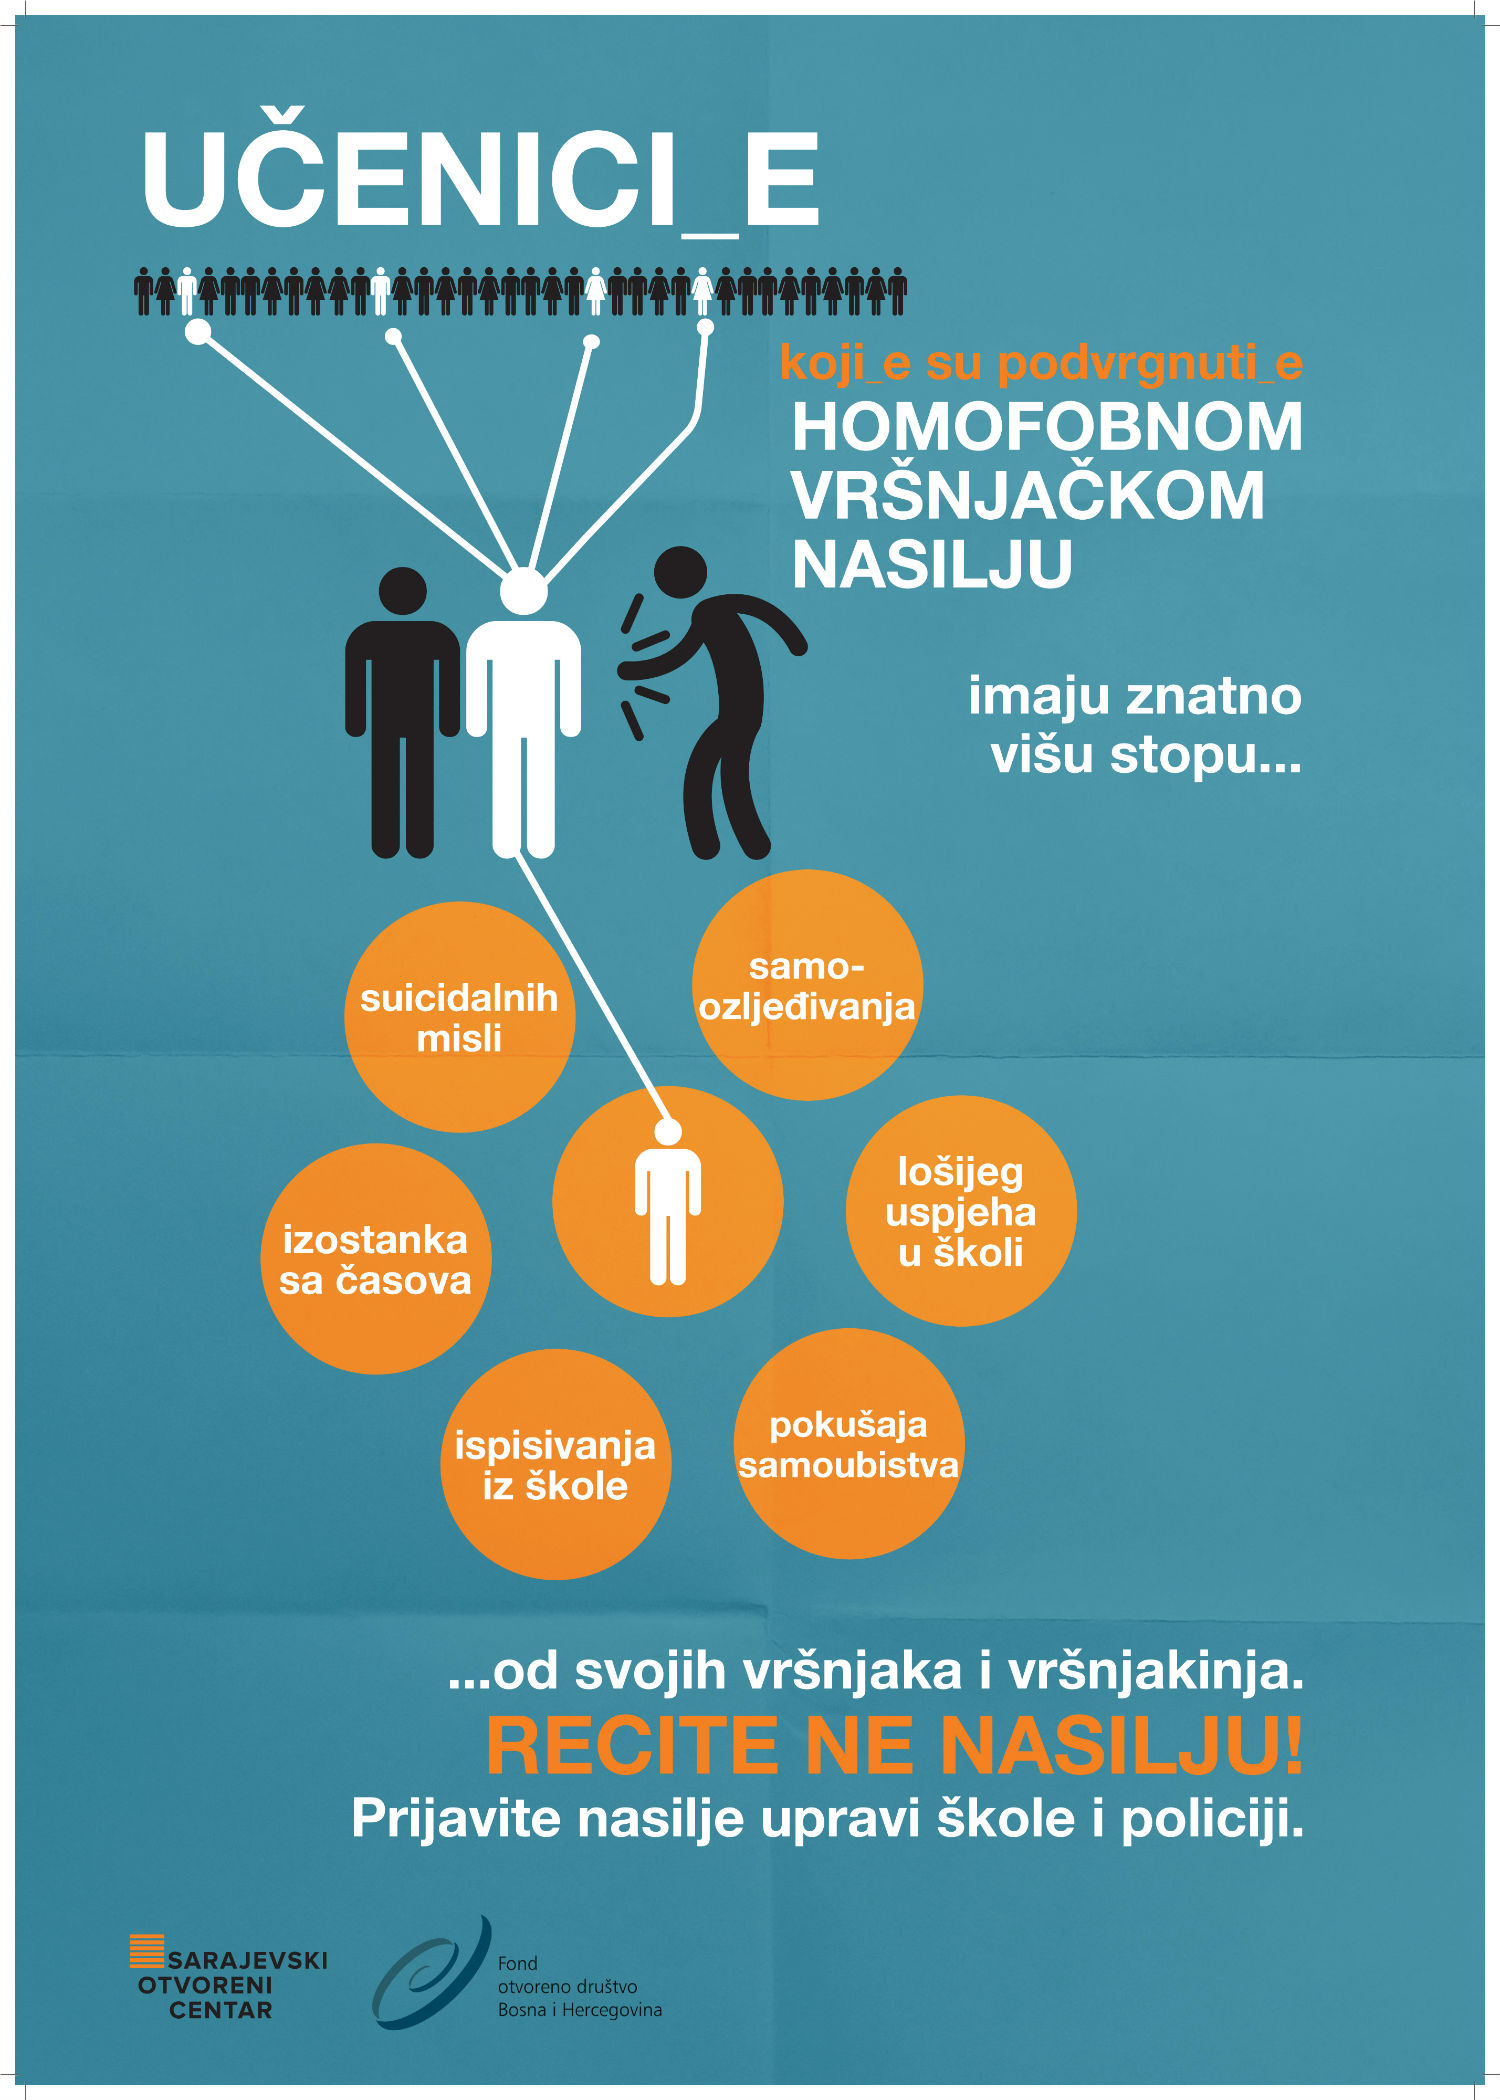 homofobicno-nasilje_novi_18_mali